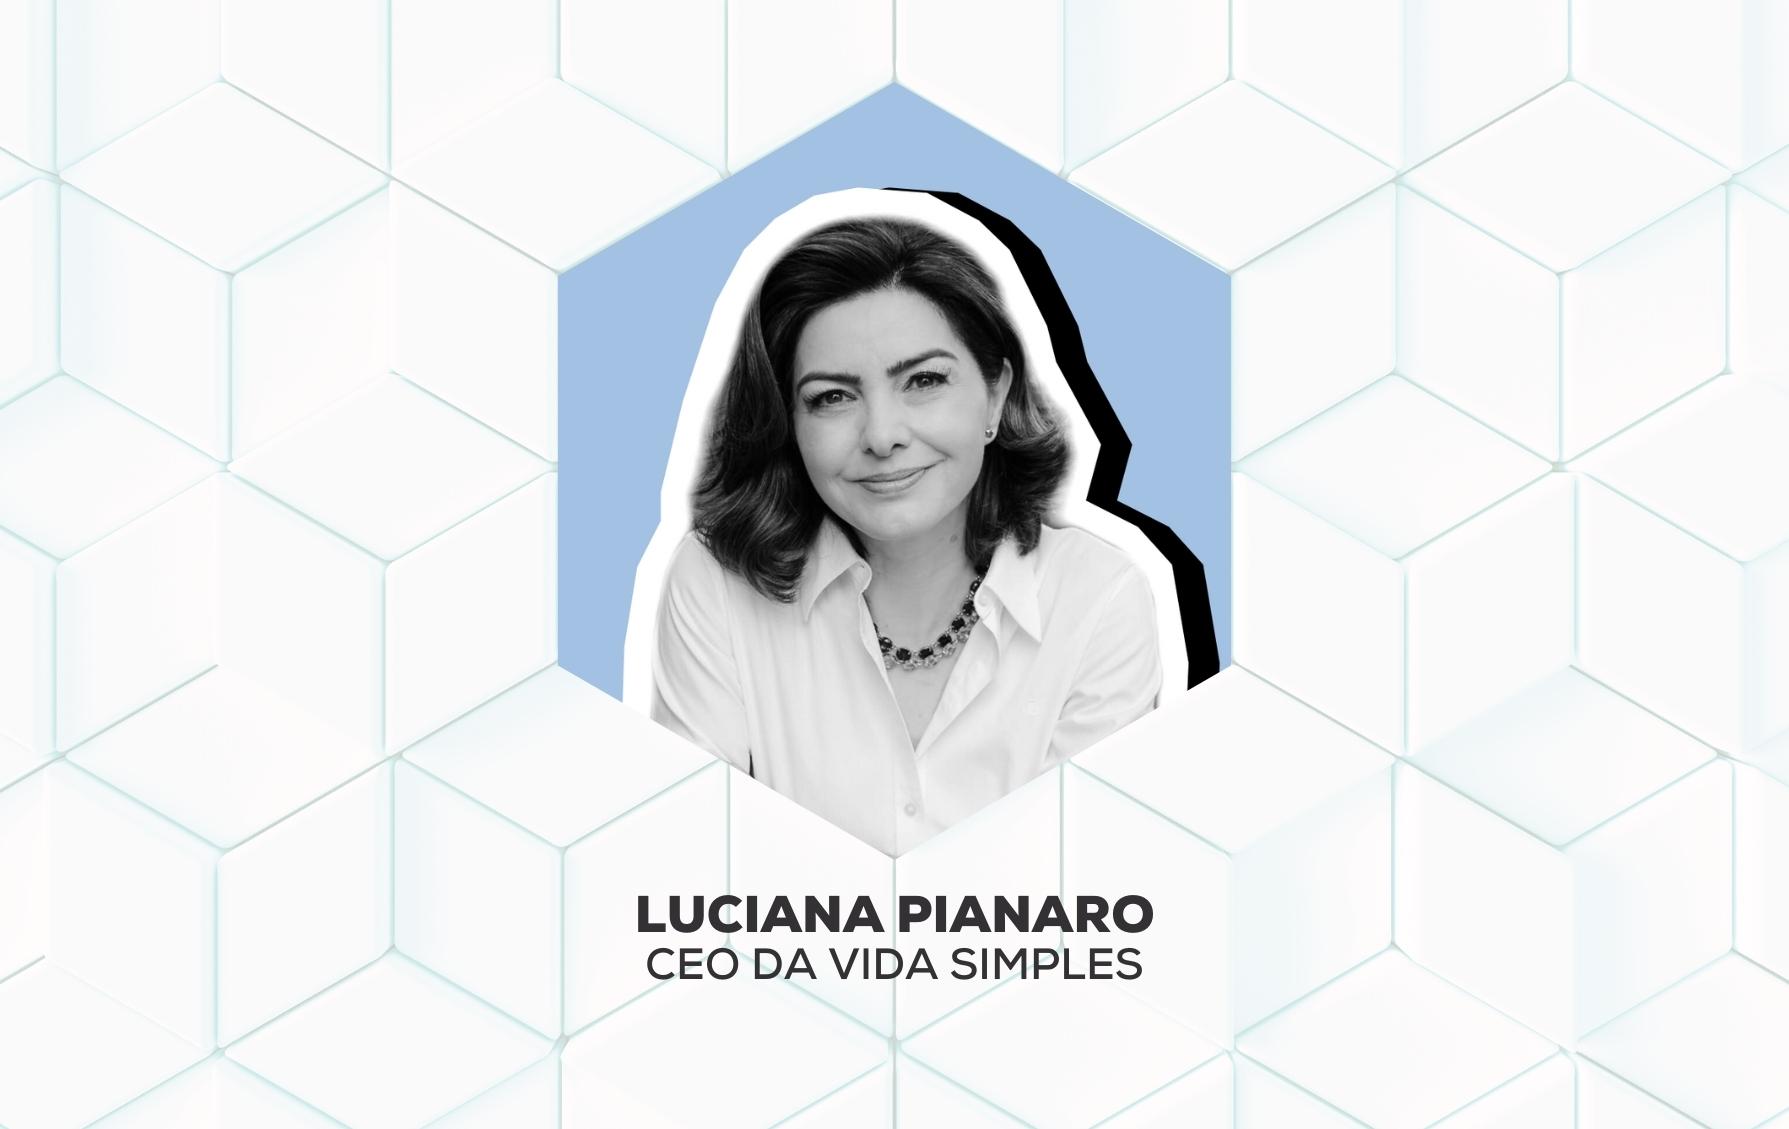 Luciana Pianaro